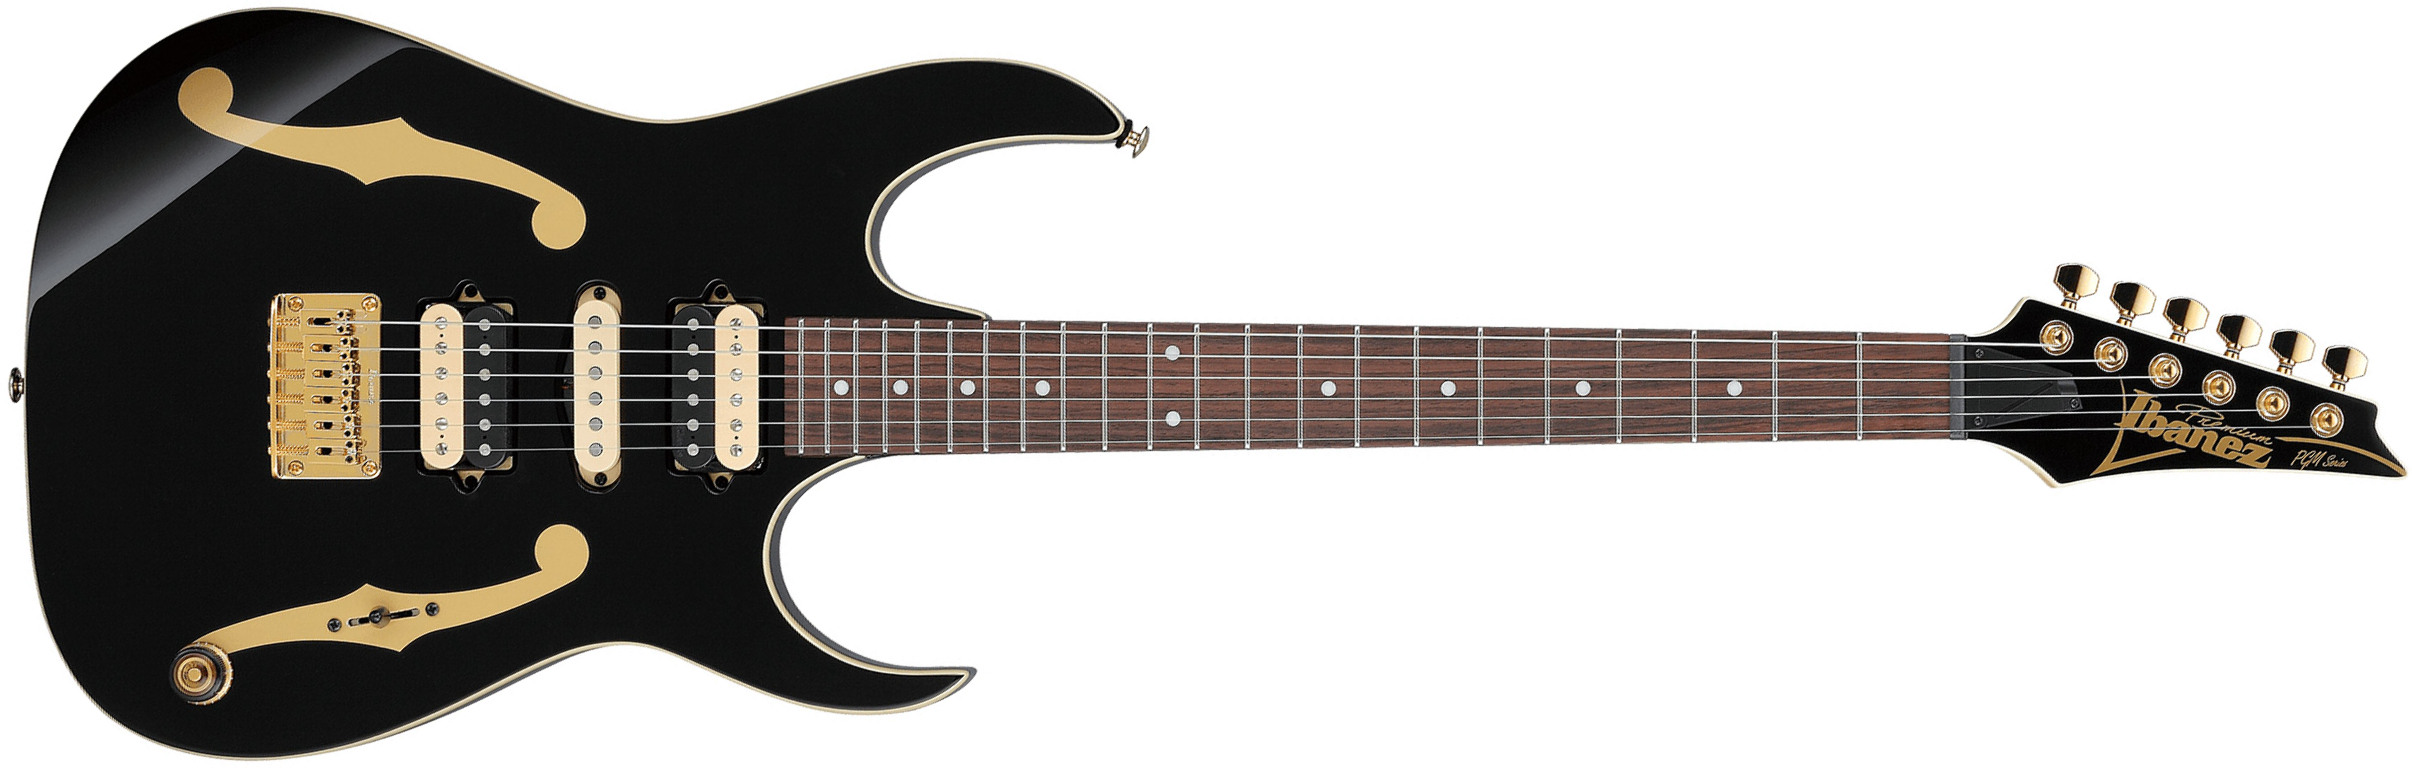 Ibanez Paul Gilbert Pgm50 Bk Premium Signature Hsh Dimarzio Ht Rw - Black - Signature electric guitar - Main picture